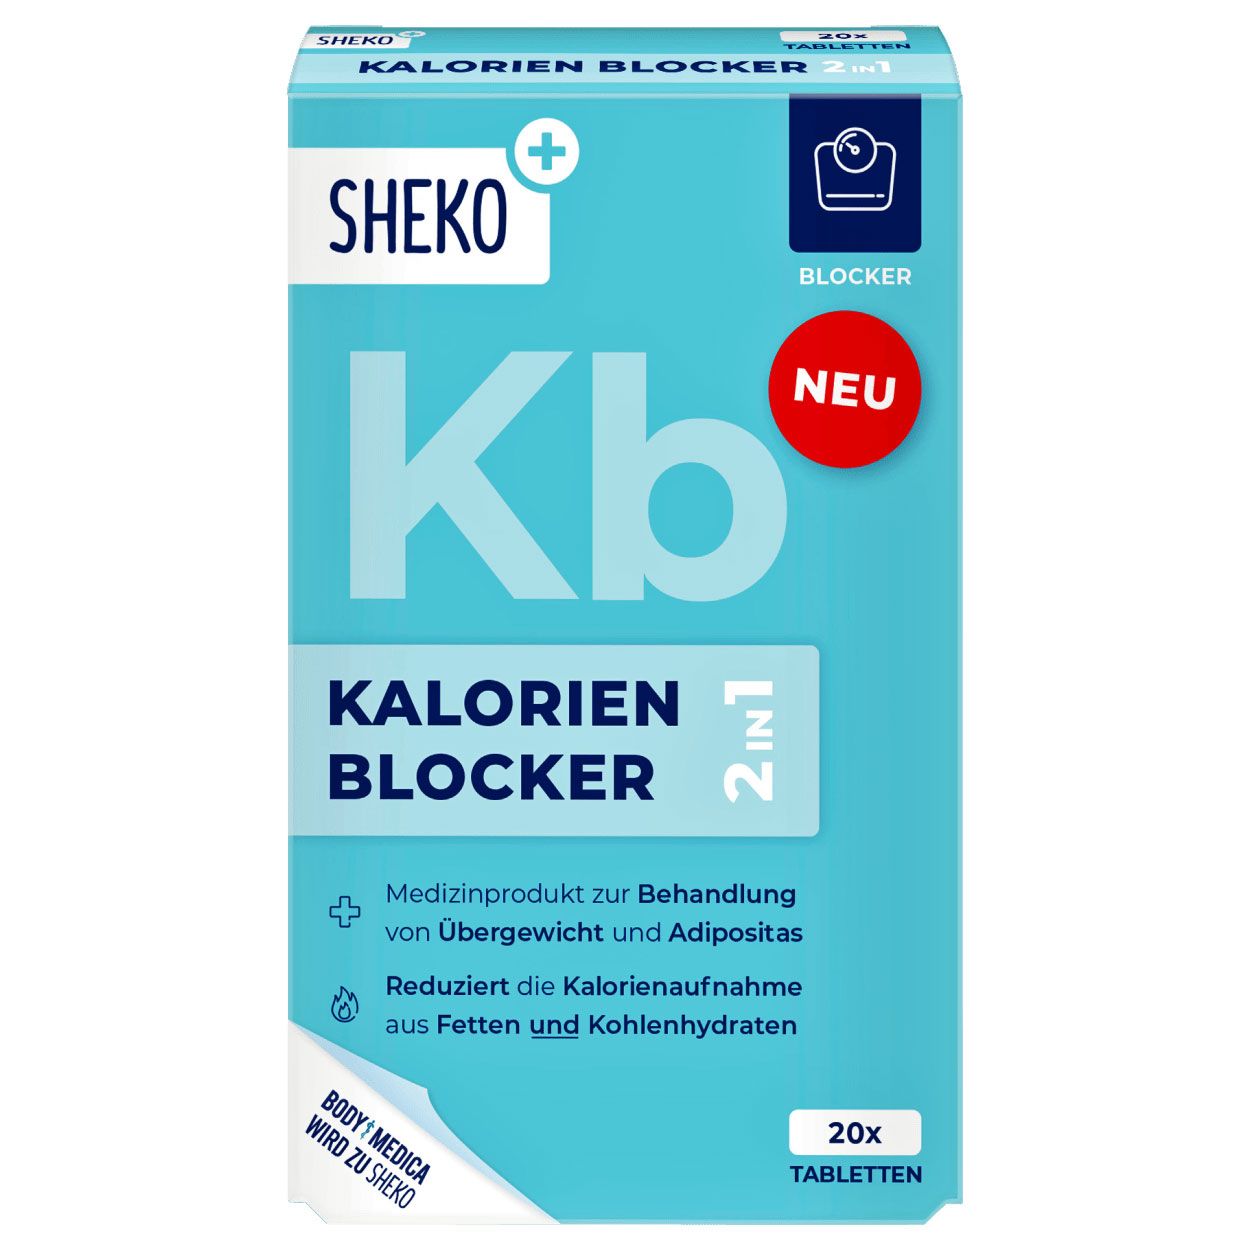 Sheko Kb Kalorien Blocker 2 in 1 Tabletten